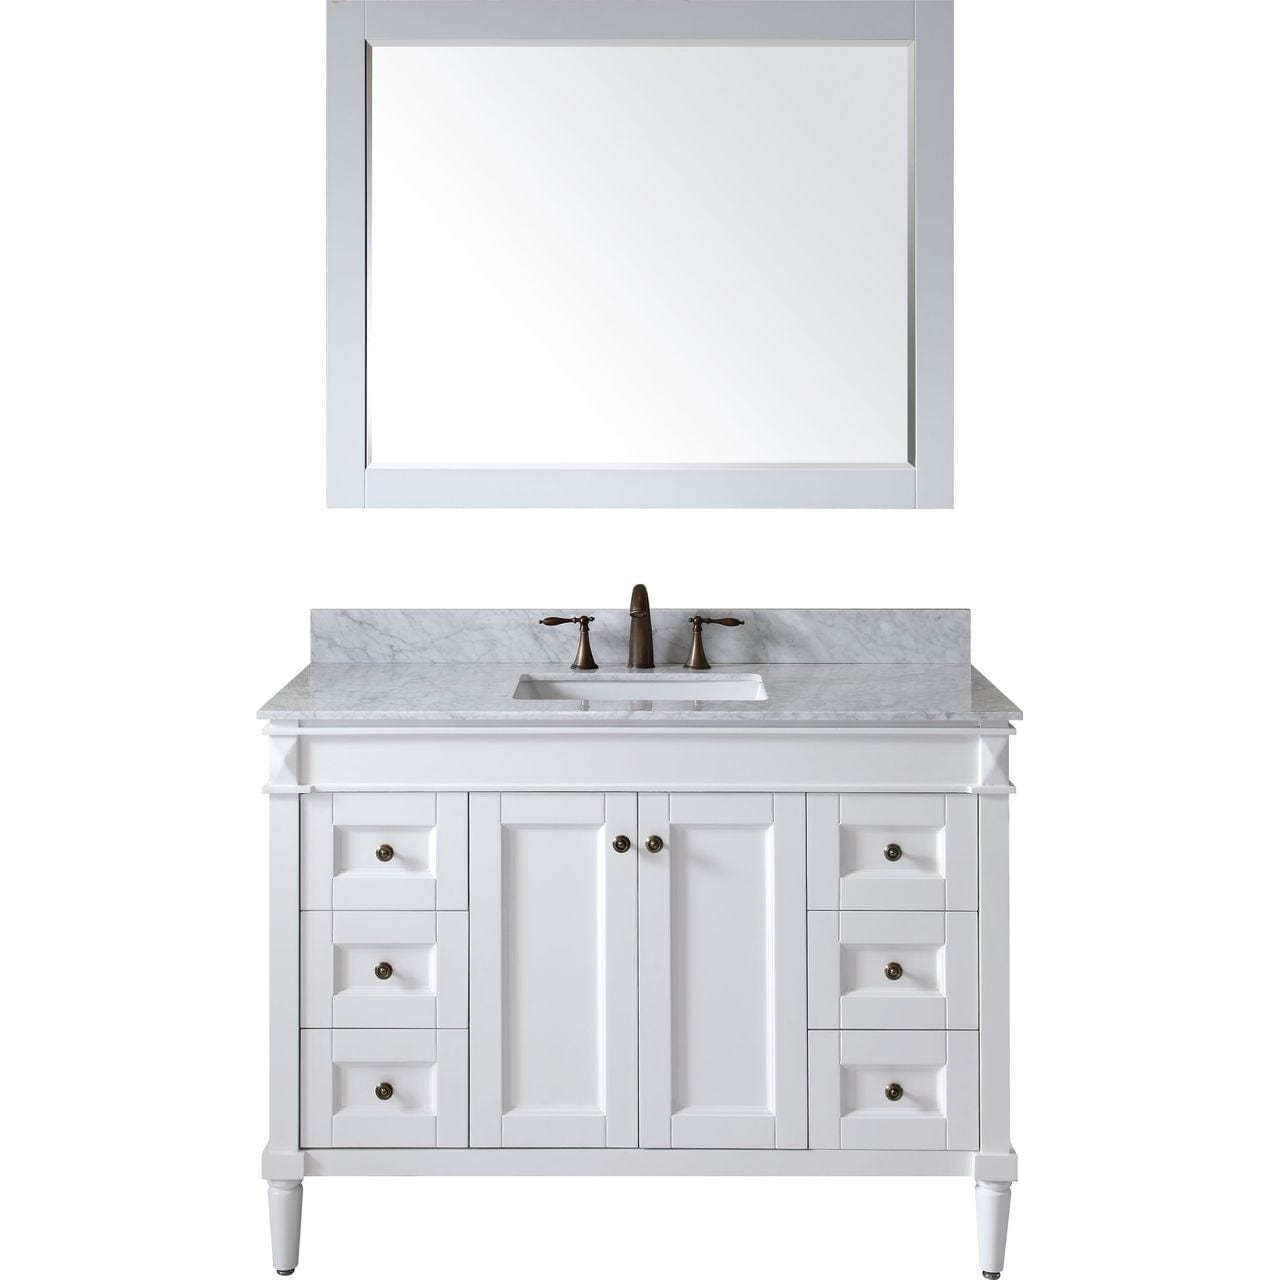 Virtu USA Tiffany 48" Single Bathroom Vanity Set in White